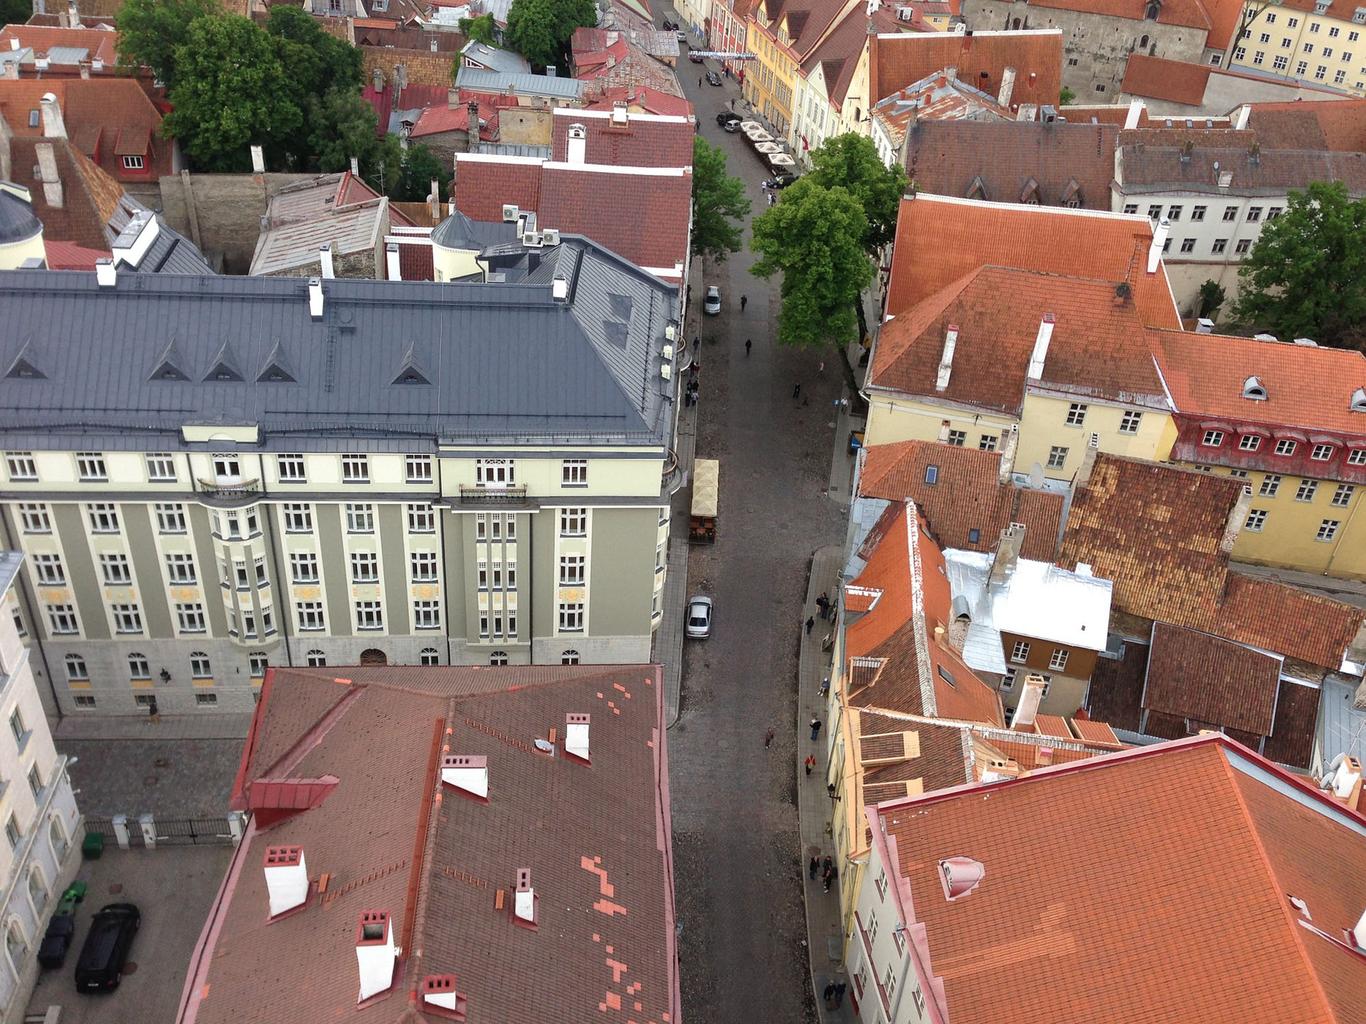 Kinnisvaraturg jätkab Eesti tähtsamates linnades stabiilselt aktiivselt, samas kui mõnel juhul on märgata ehituslubade menetlusaja pikenemist, kirjutab  KINNISV